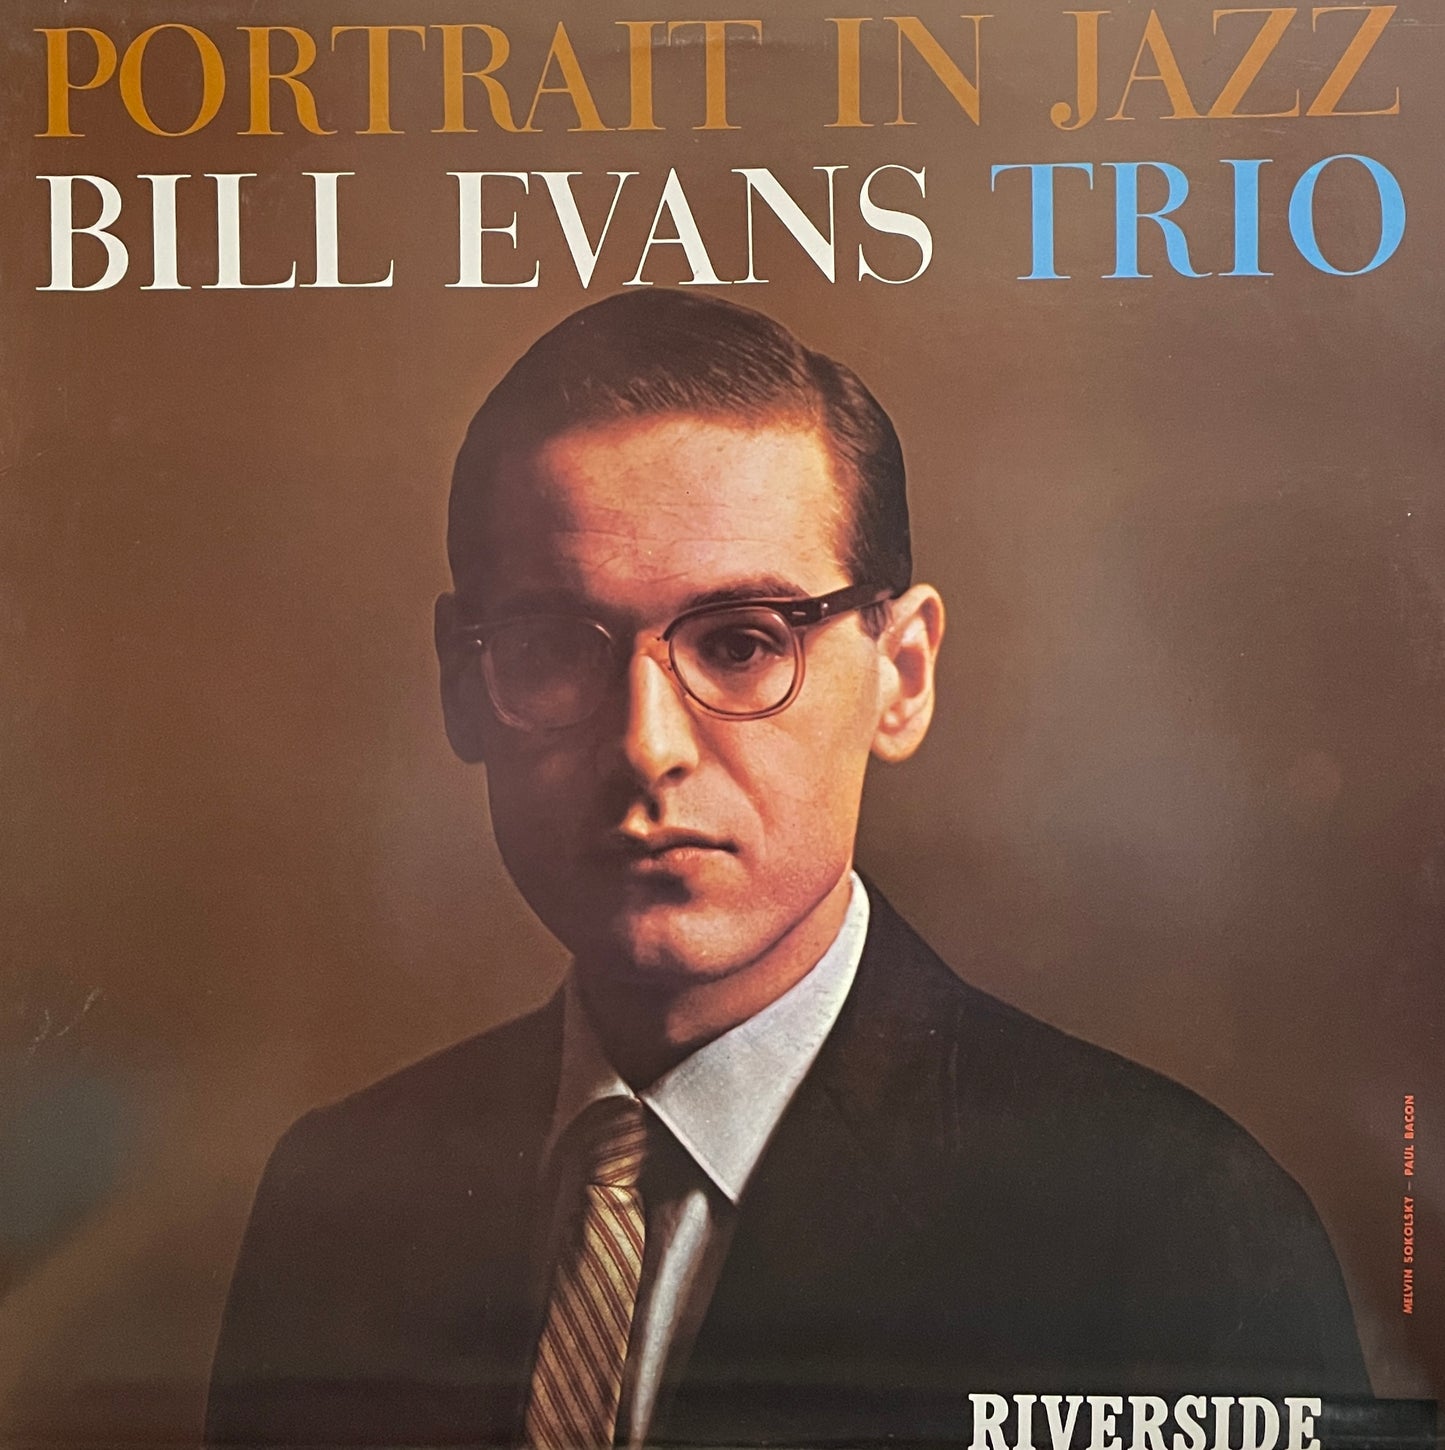 Bill Evans Trio "Portraits In Jazz" (1983)